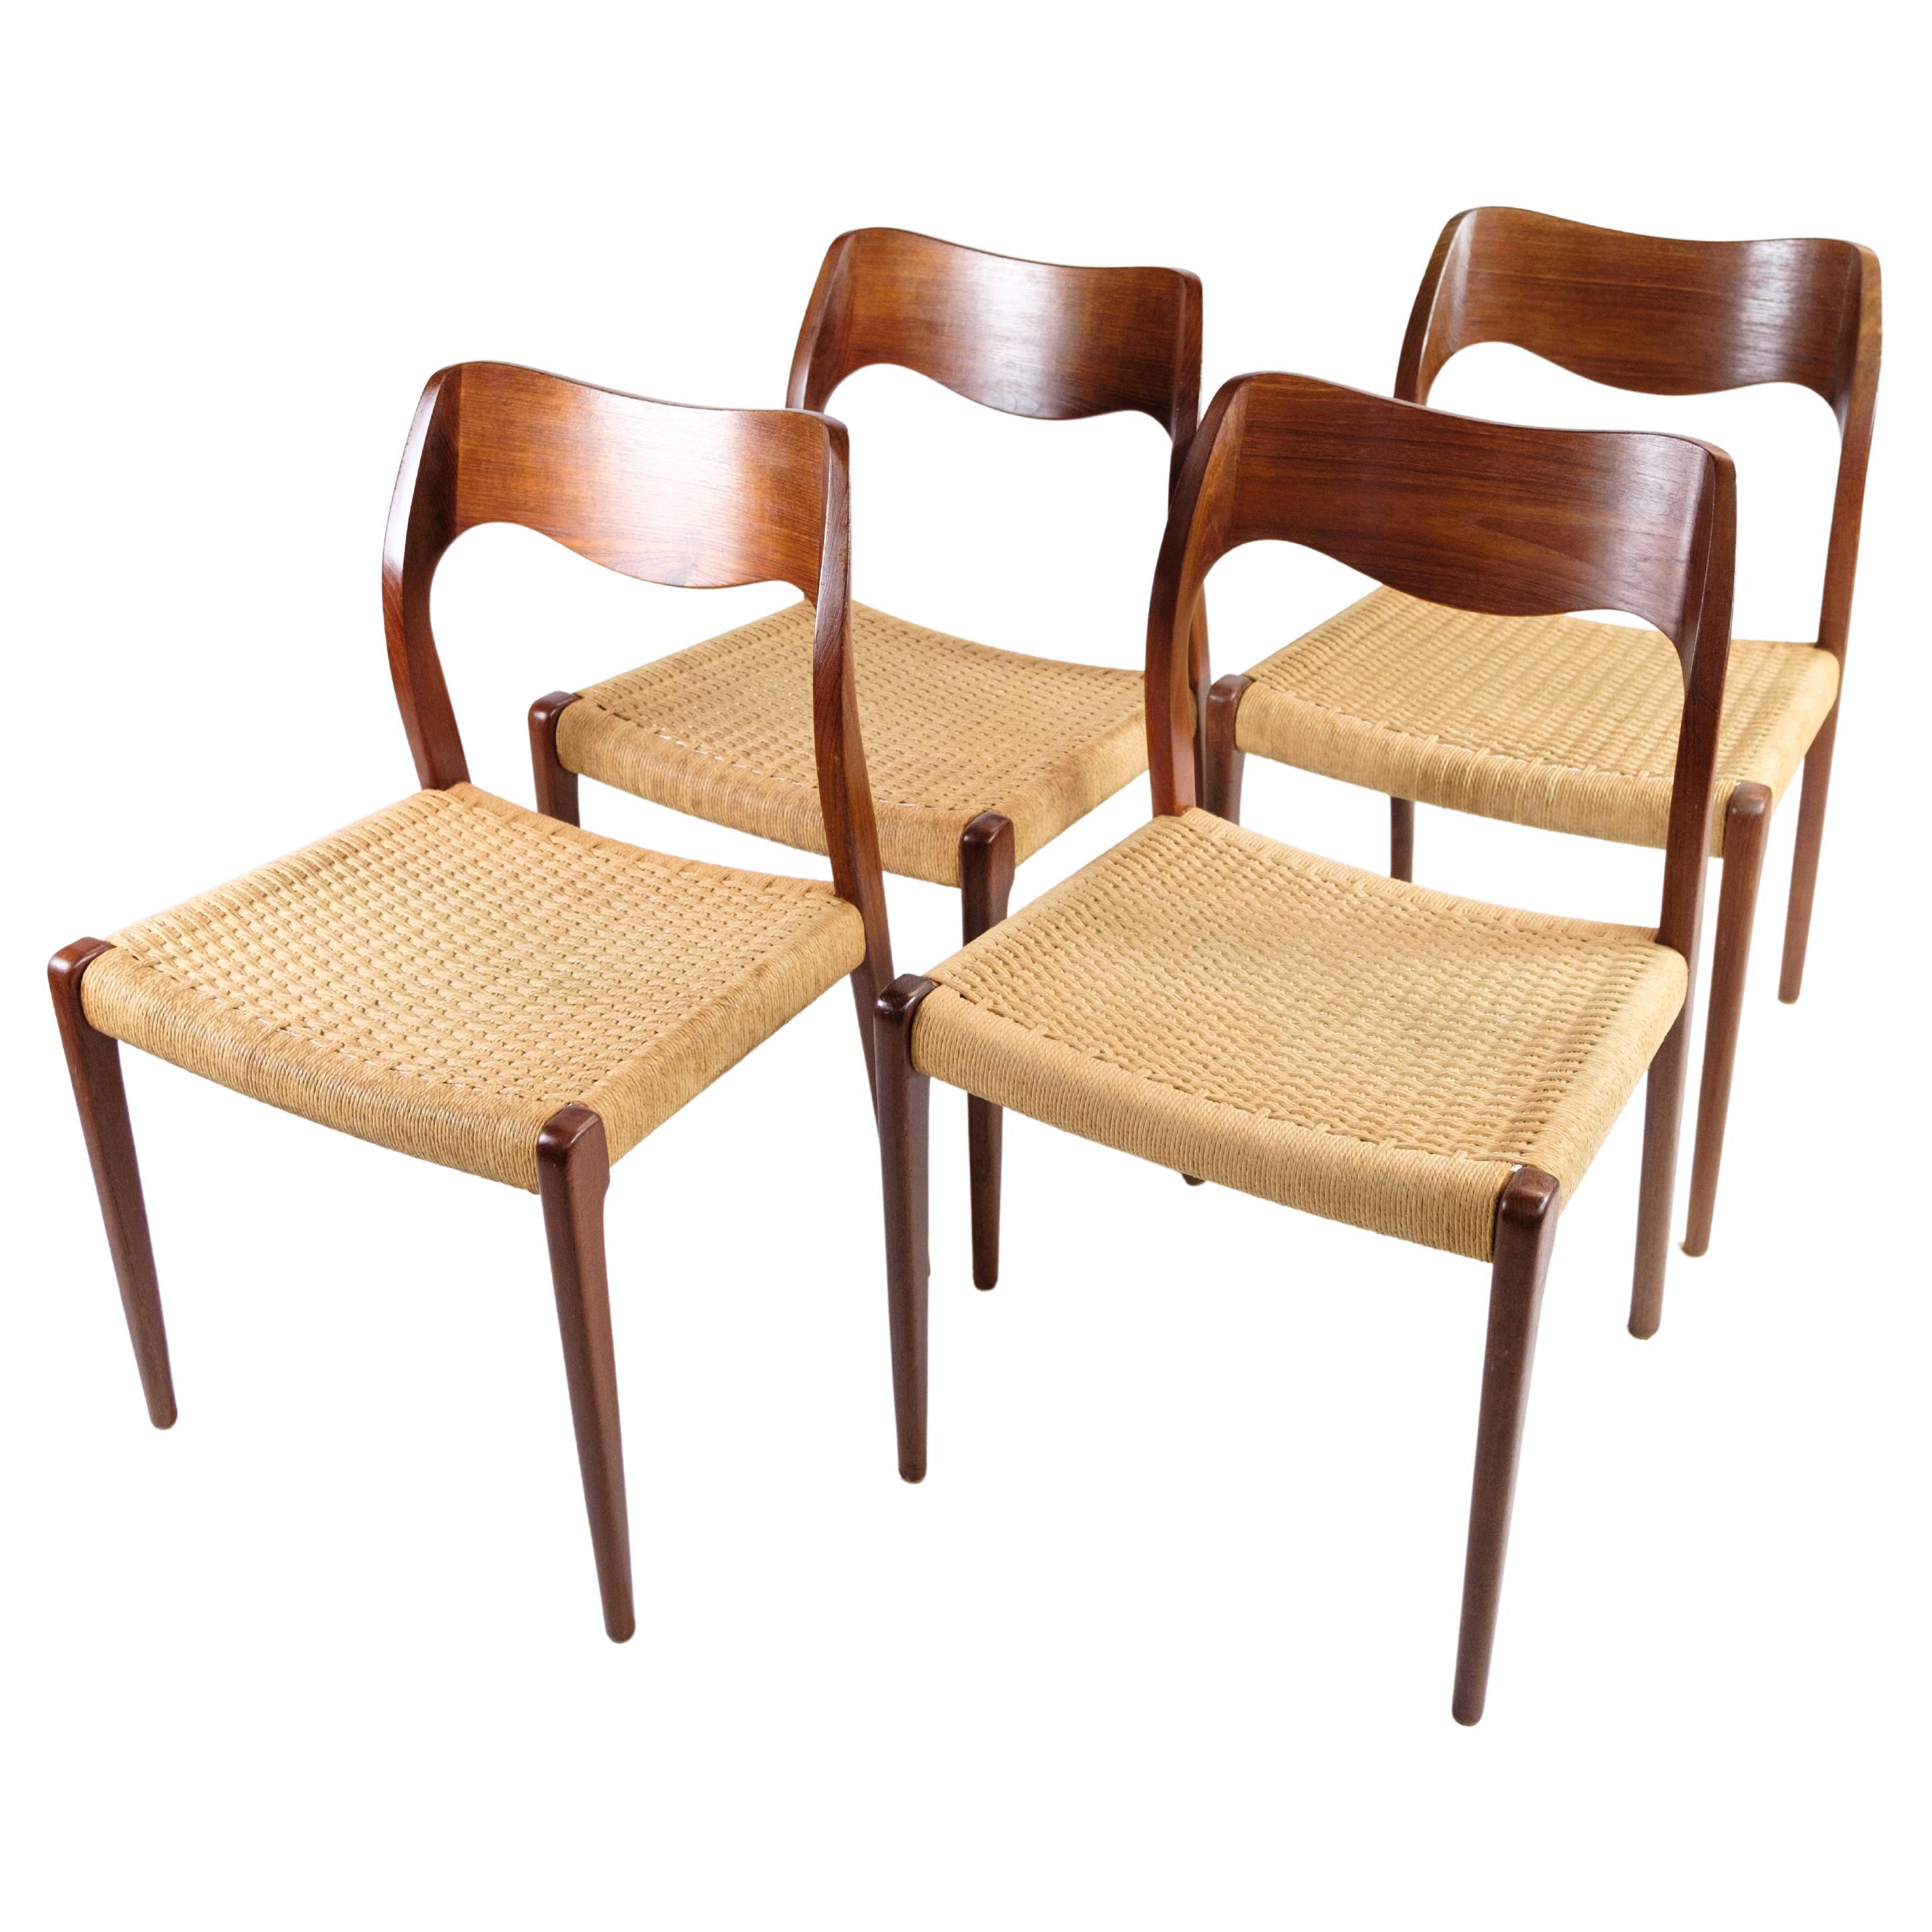 Set of Four Dining Chairs, Model 71, N.O. Møller, Teak, Designed 1951